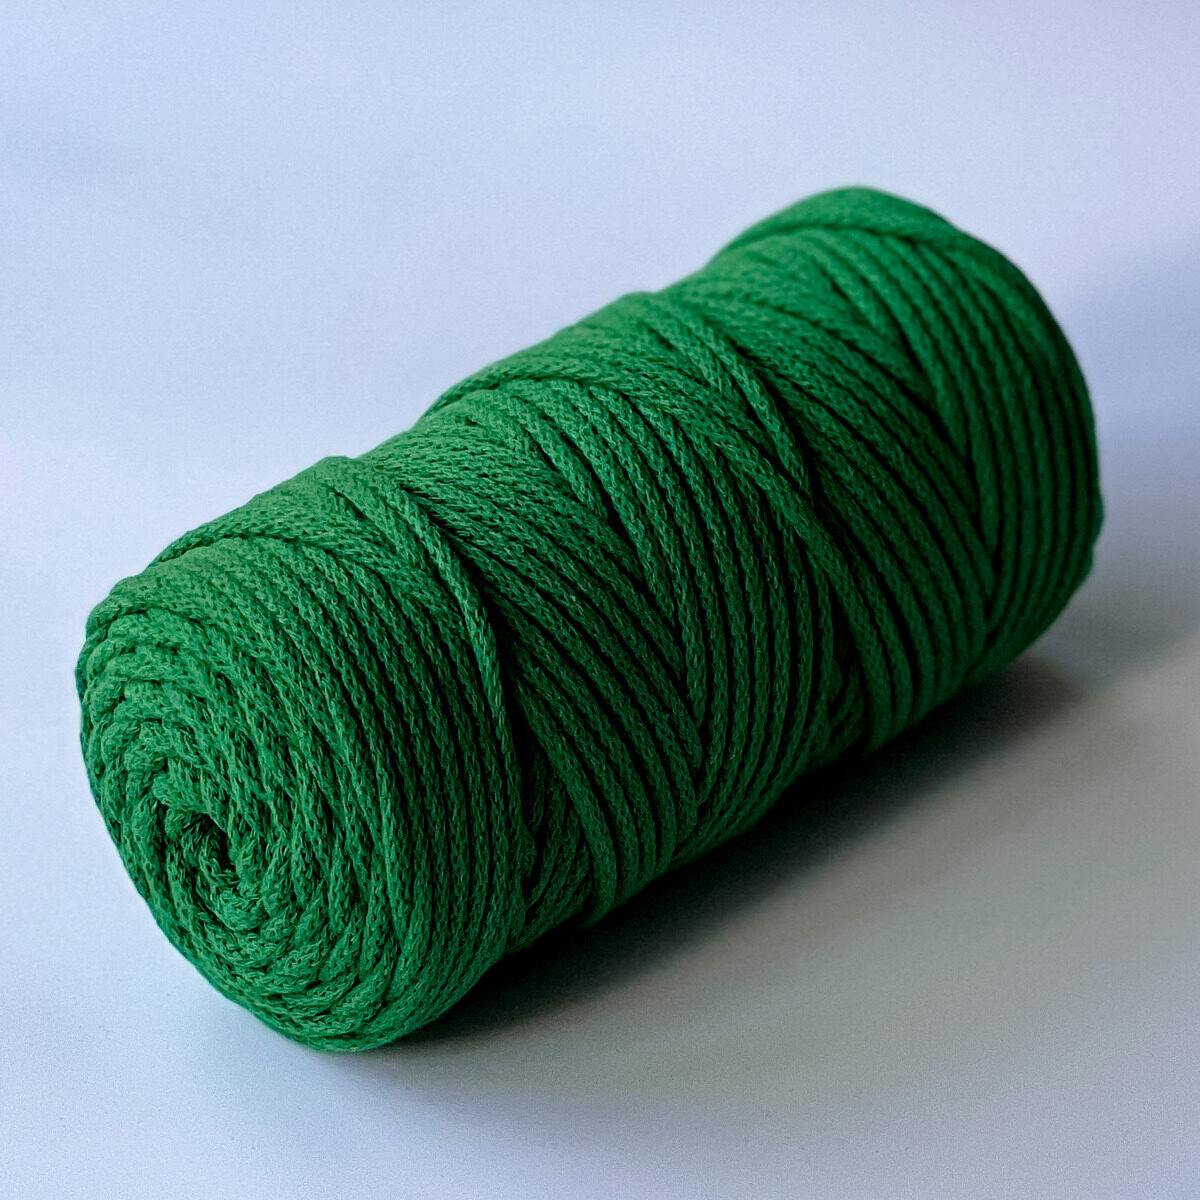 Sznurek do makramy pleciony z bawełnianym rdzeniem, grubość 5 mm. Kolor: soczysty zielony